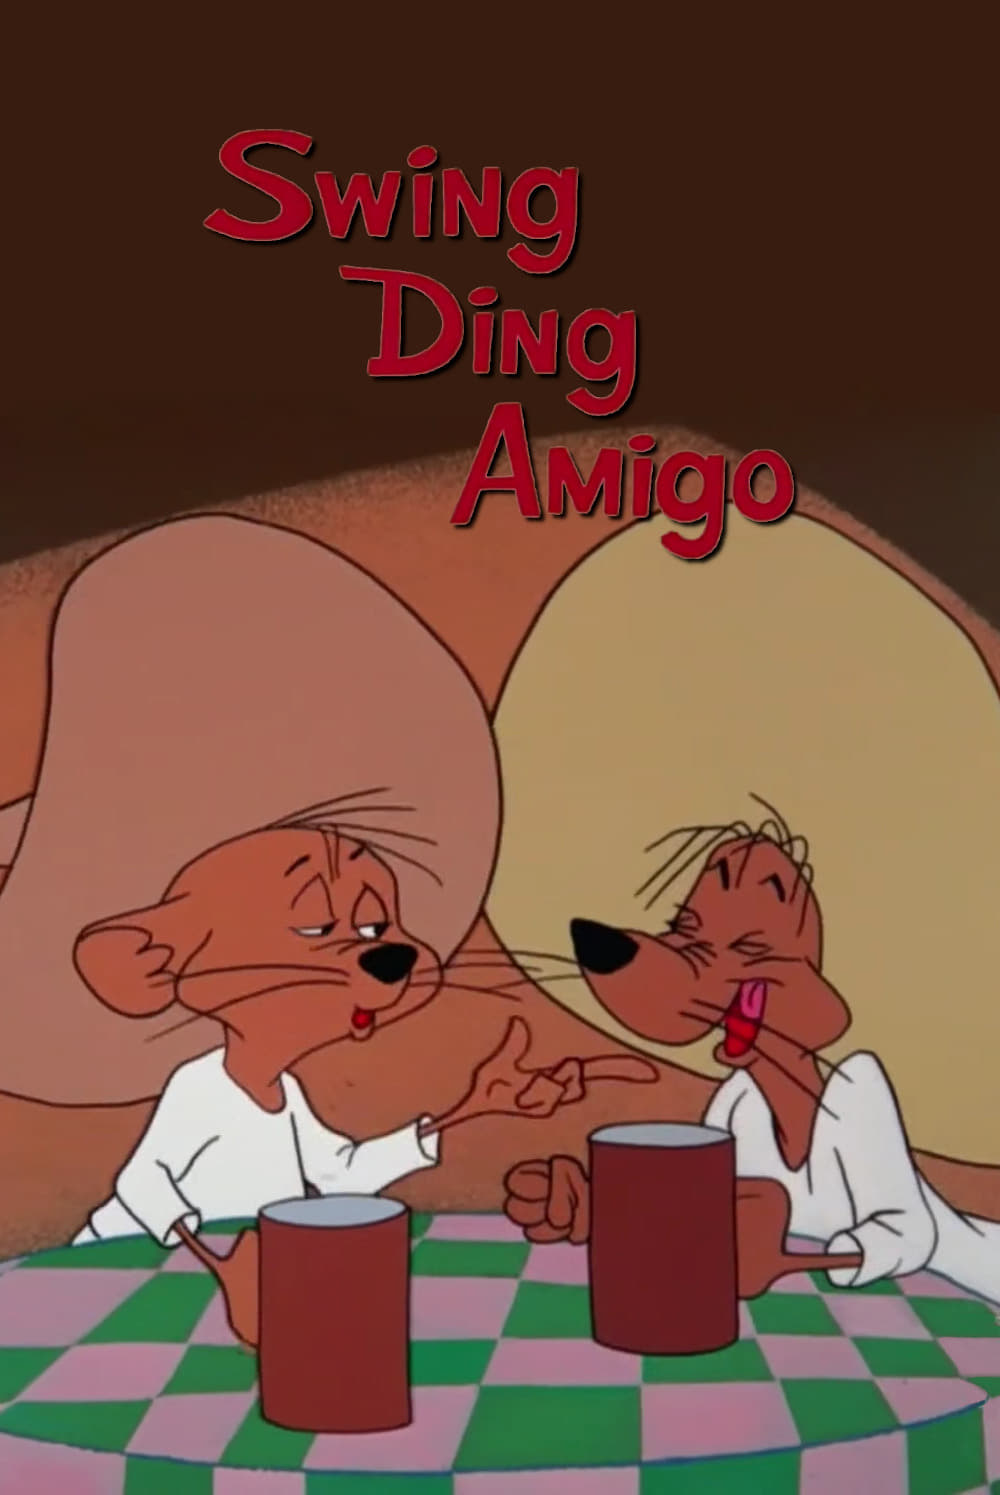 Swing Ding Amigo